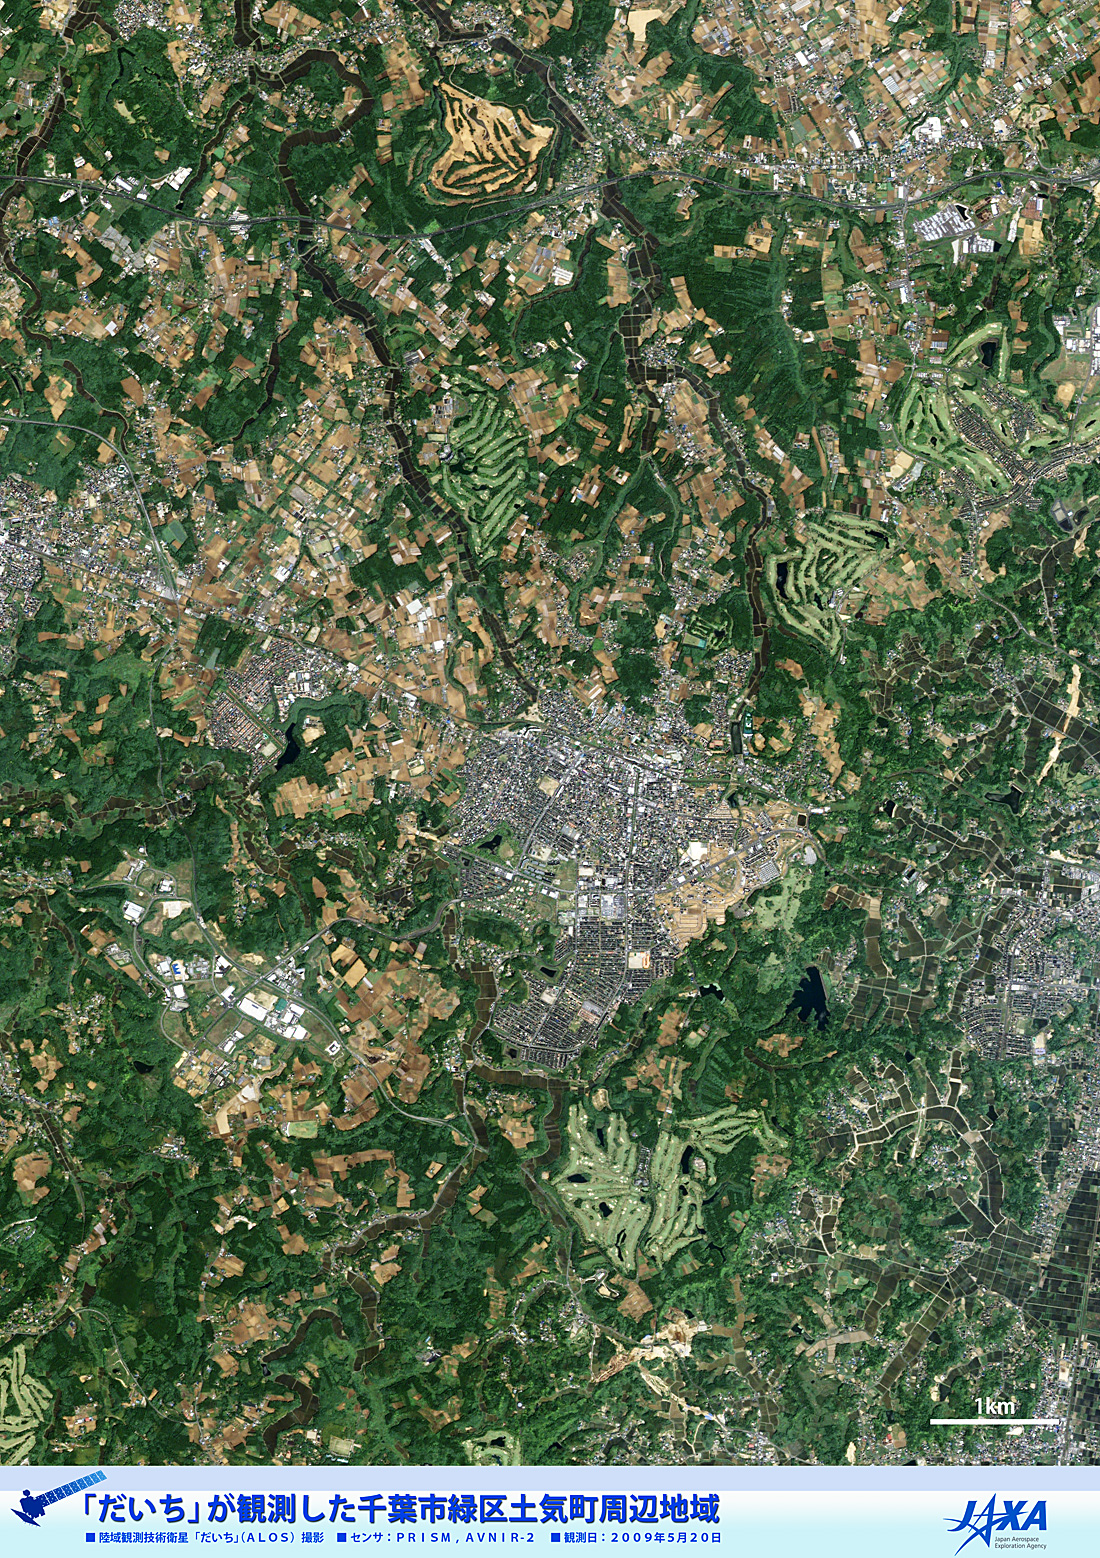 だいちから見た日本の都市 千葉市緑区土気町:衛星画像（ポスター仕上げ）